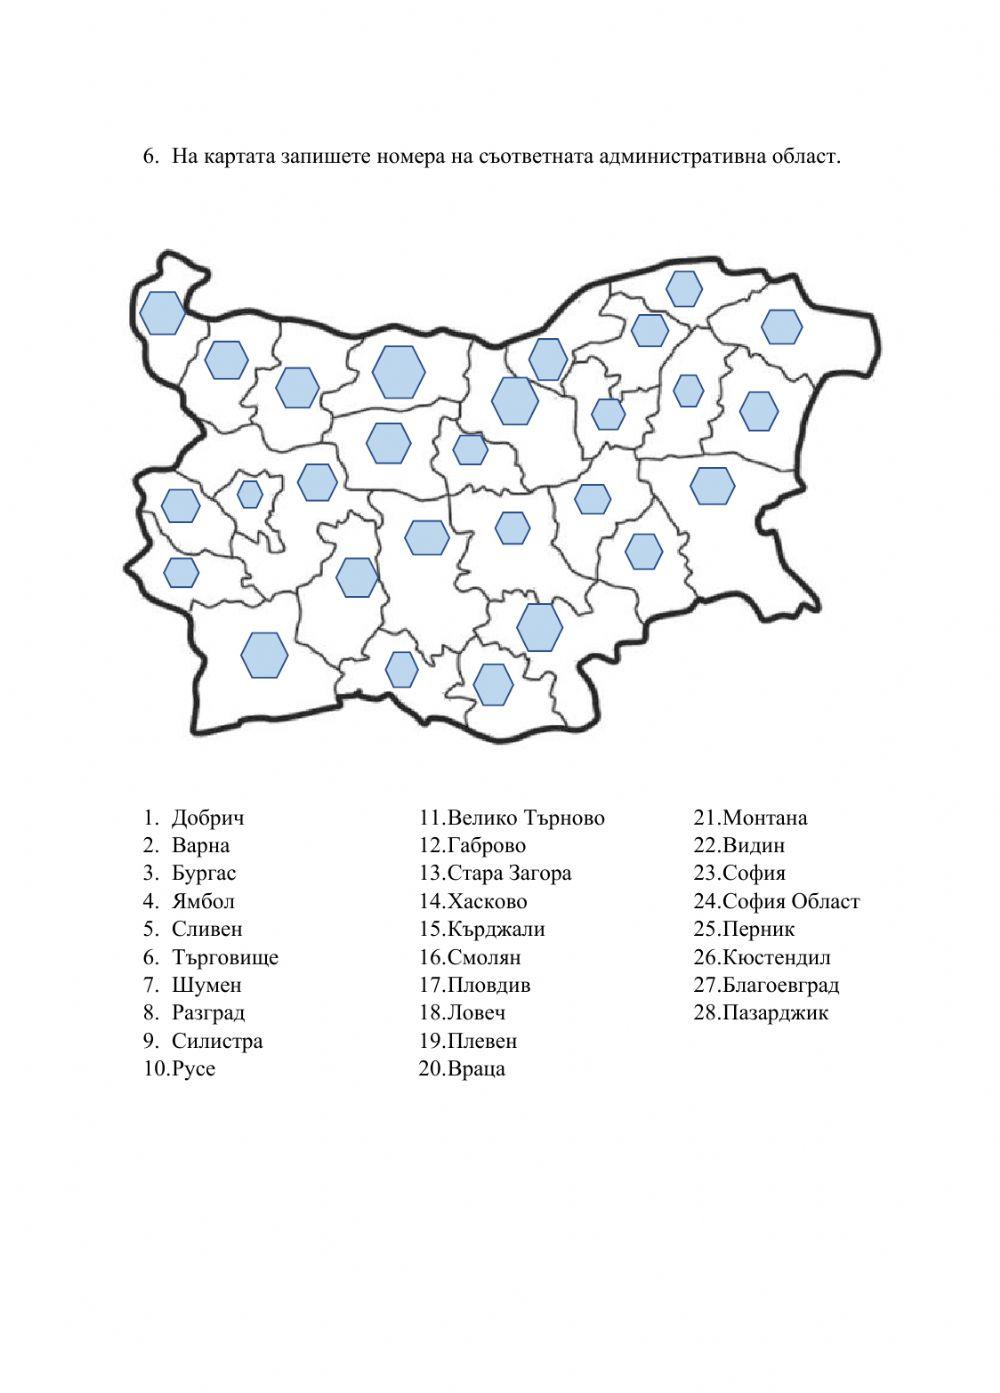 Държавно устройство и административно-териториално деление на България